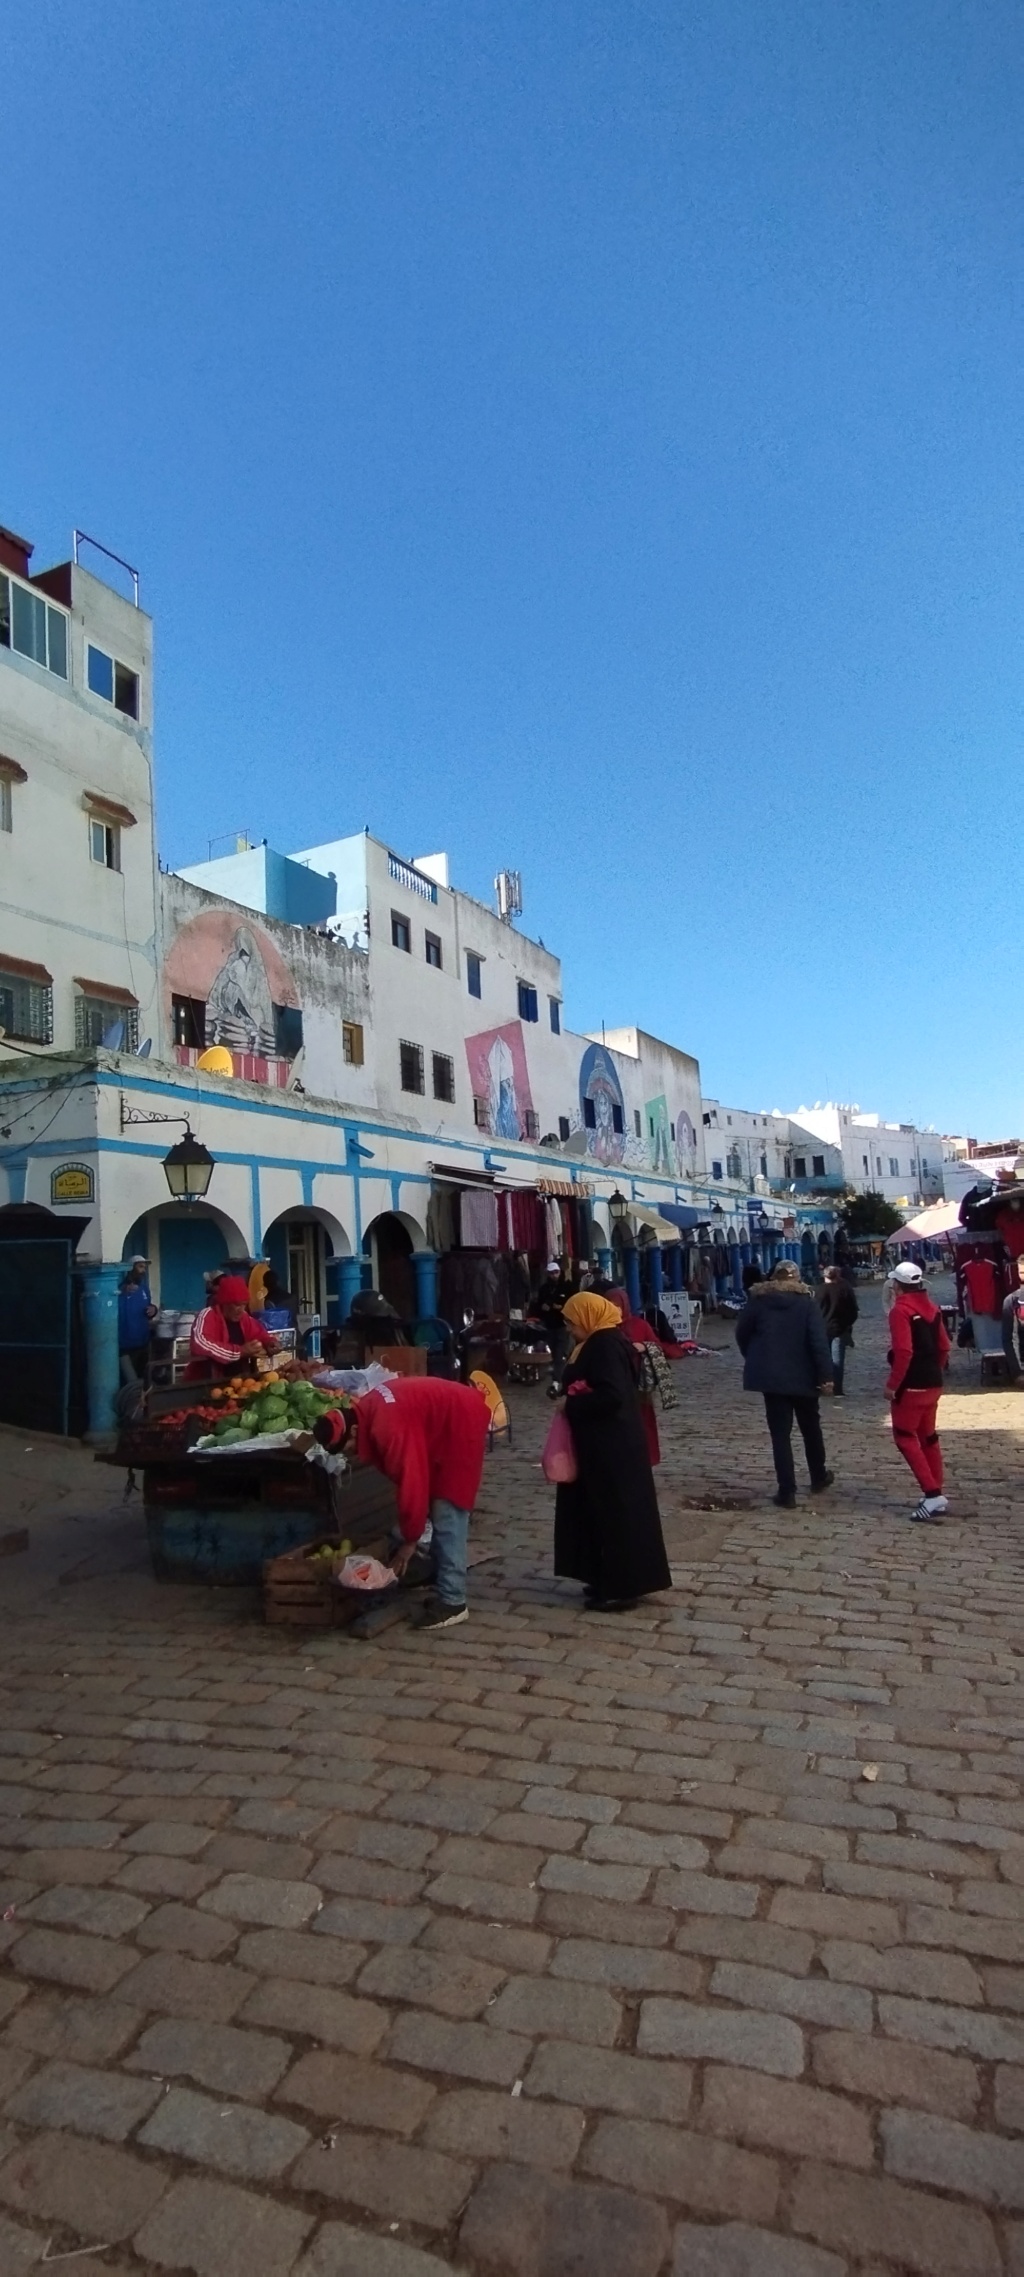 Changement de décor :  bienvenu au Maroc du Nord  - Page 2 Img_2099